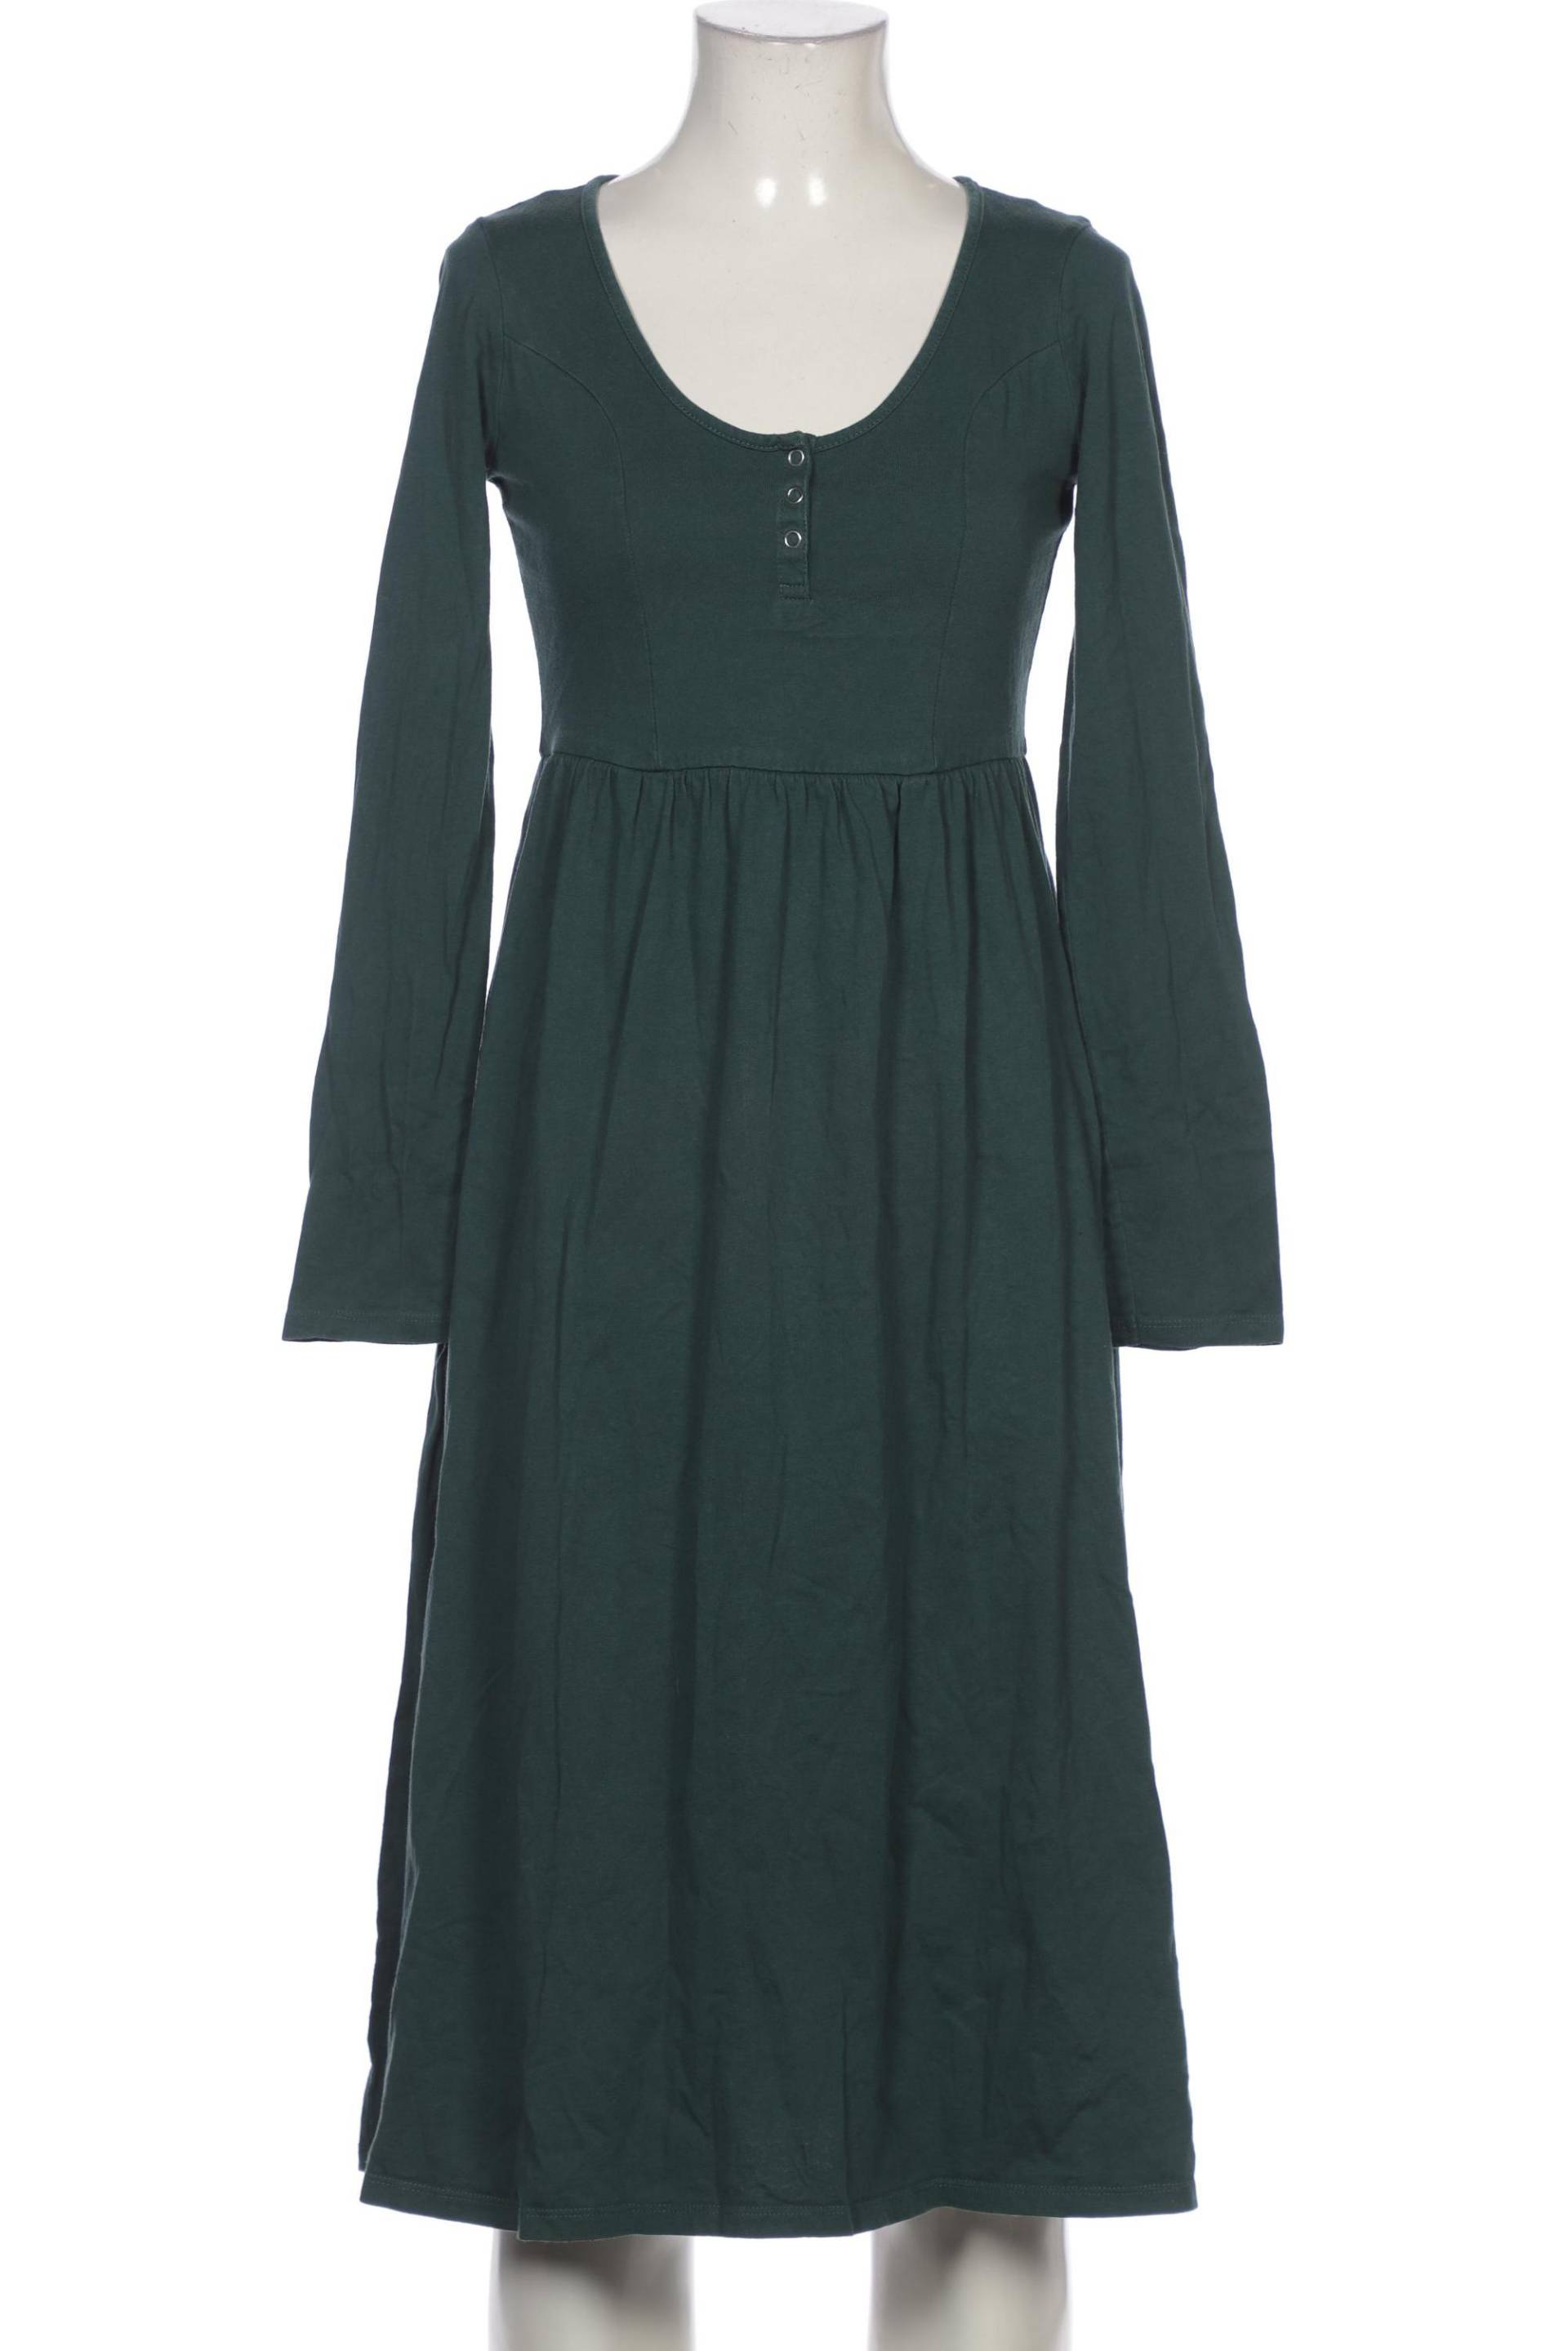 asos Damen Kleid, grün, Gr. 34 von asos